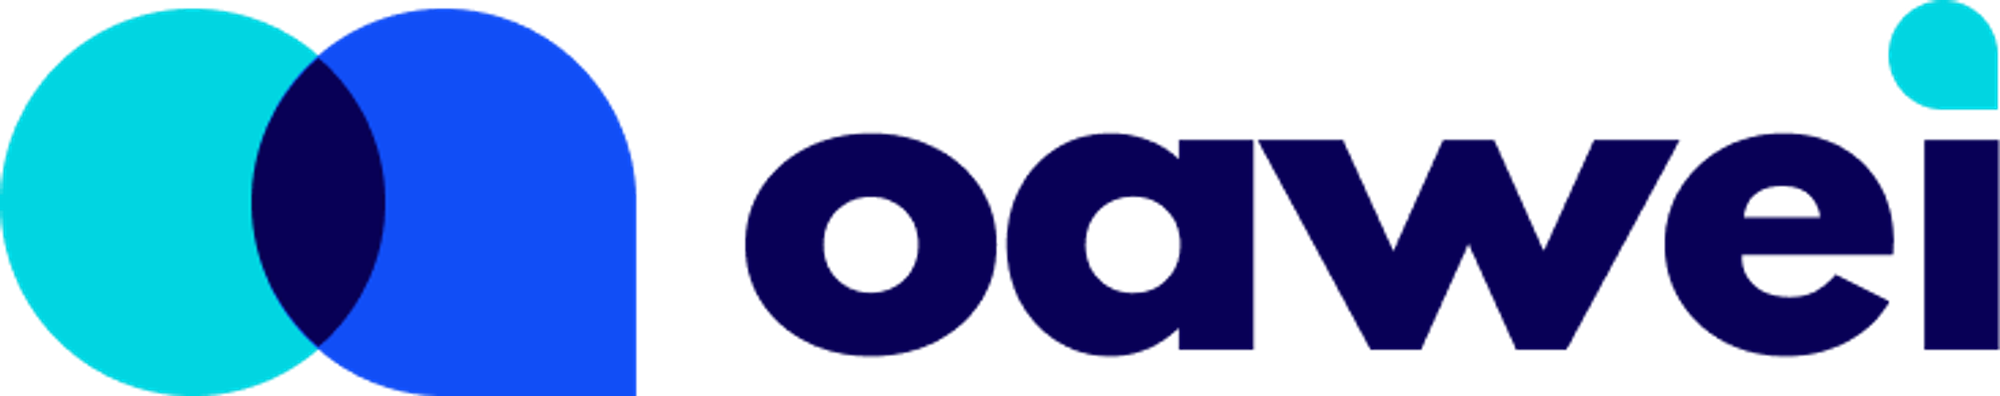 Modern logo design for oawei.com